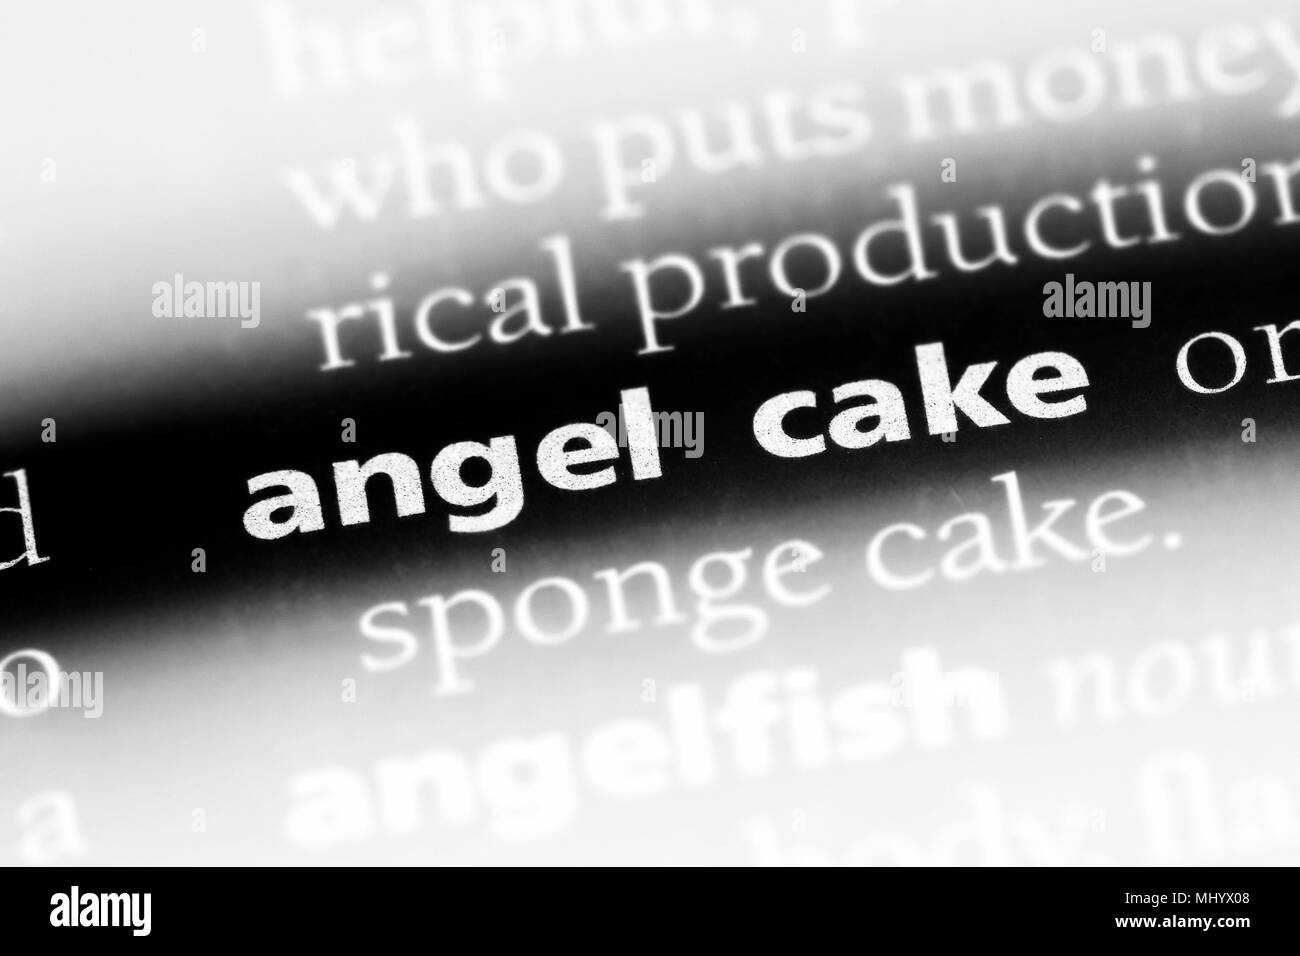 Angel cake mot dans un dictionnaire. angel cake concept. Banque D'Images